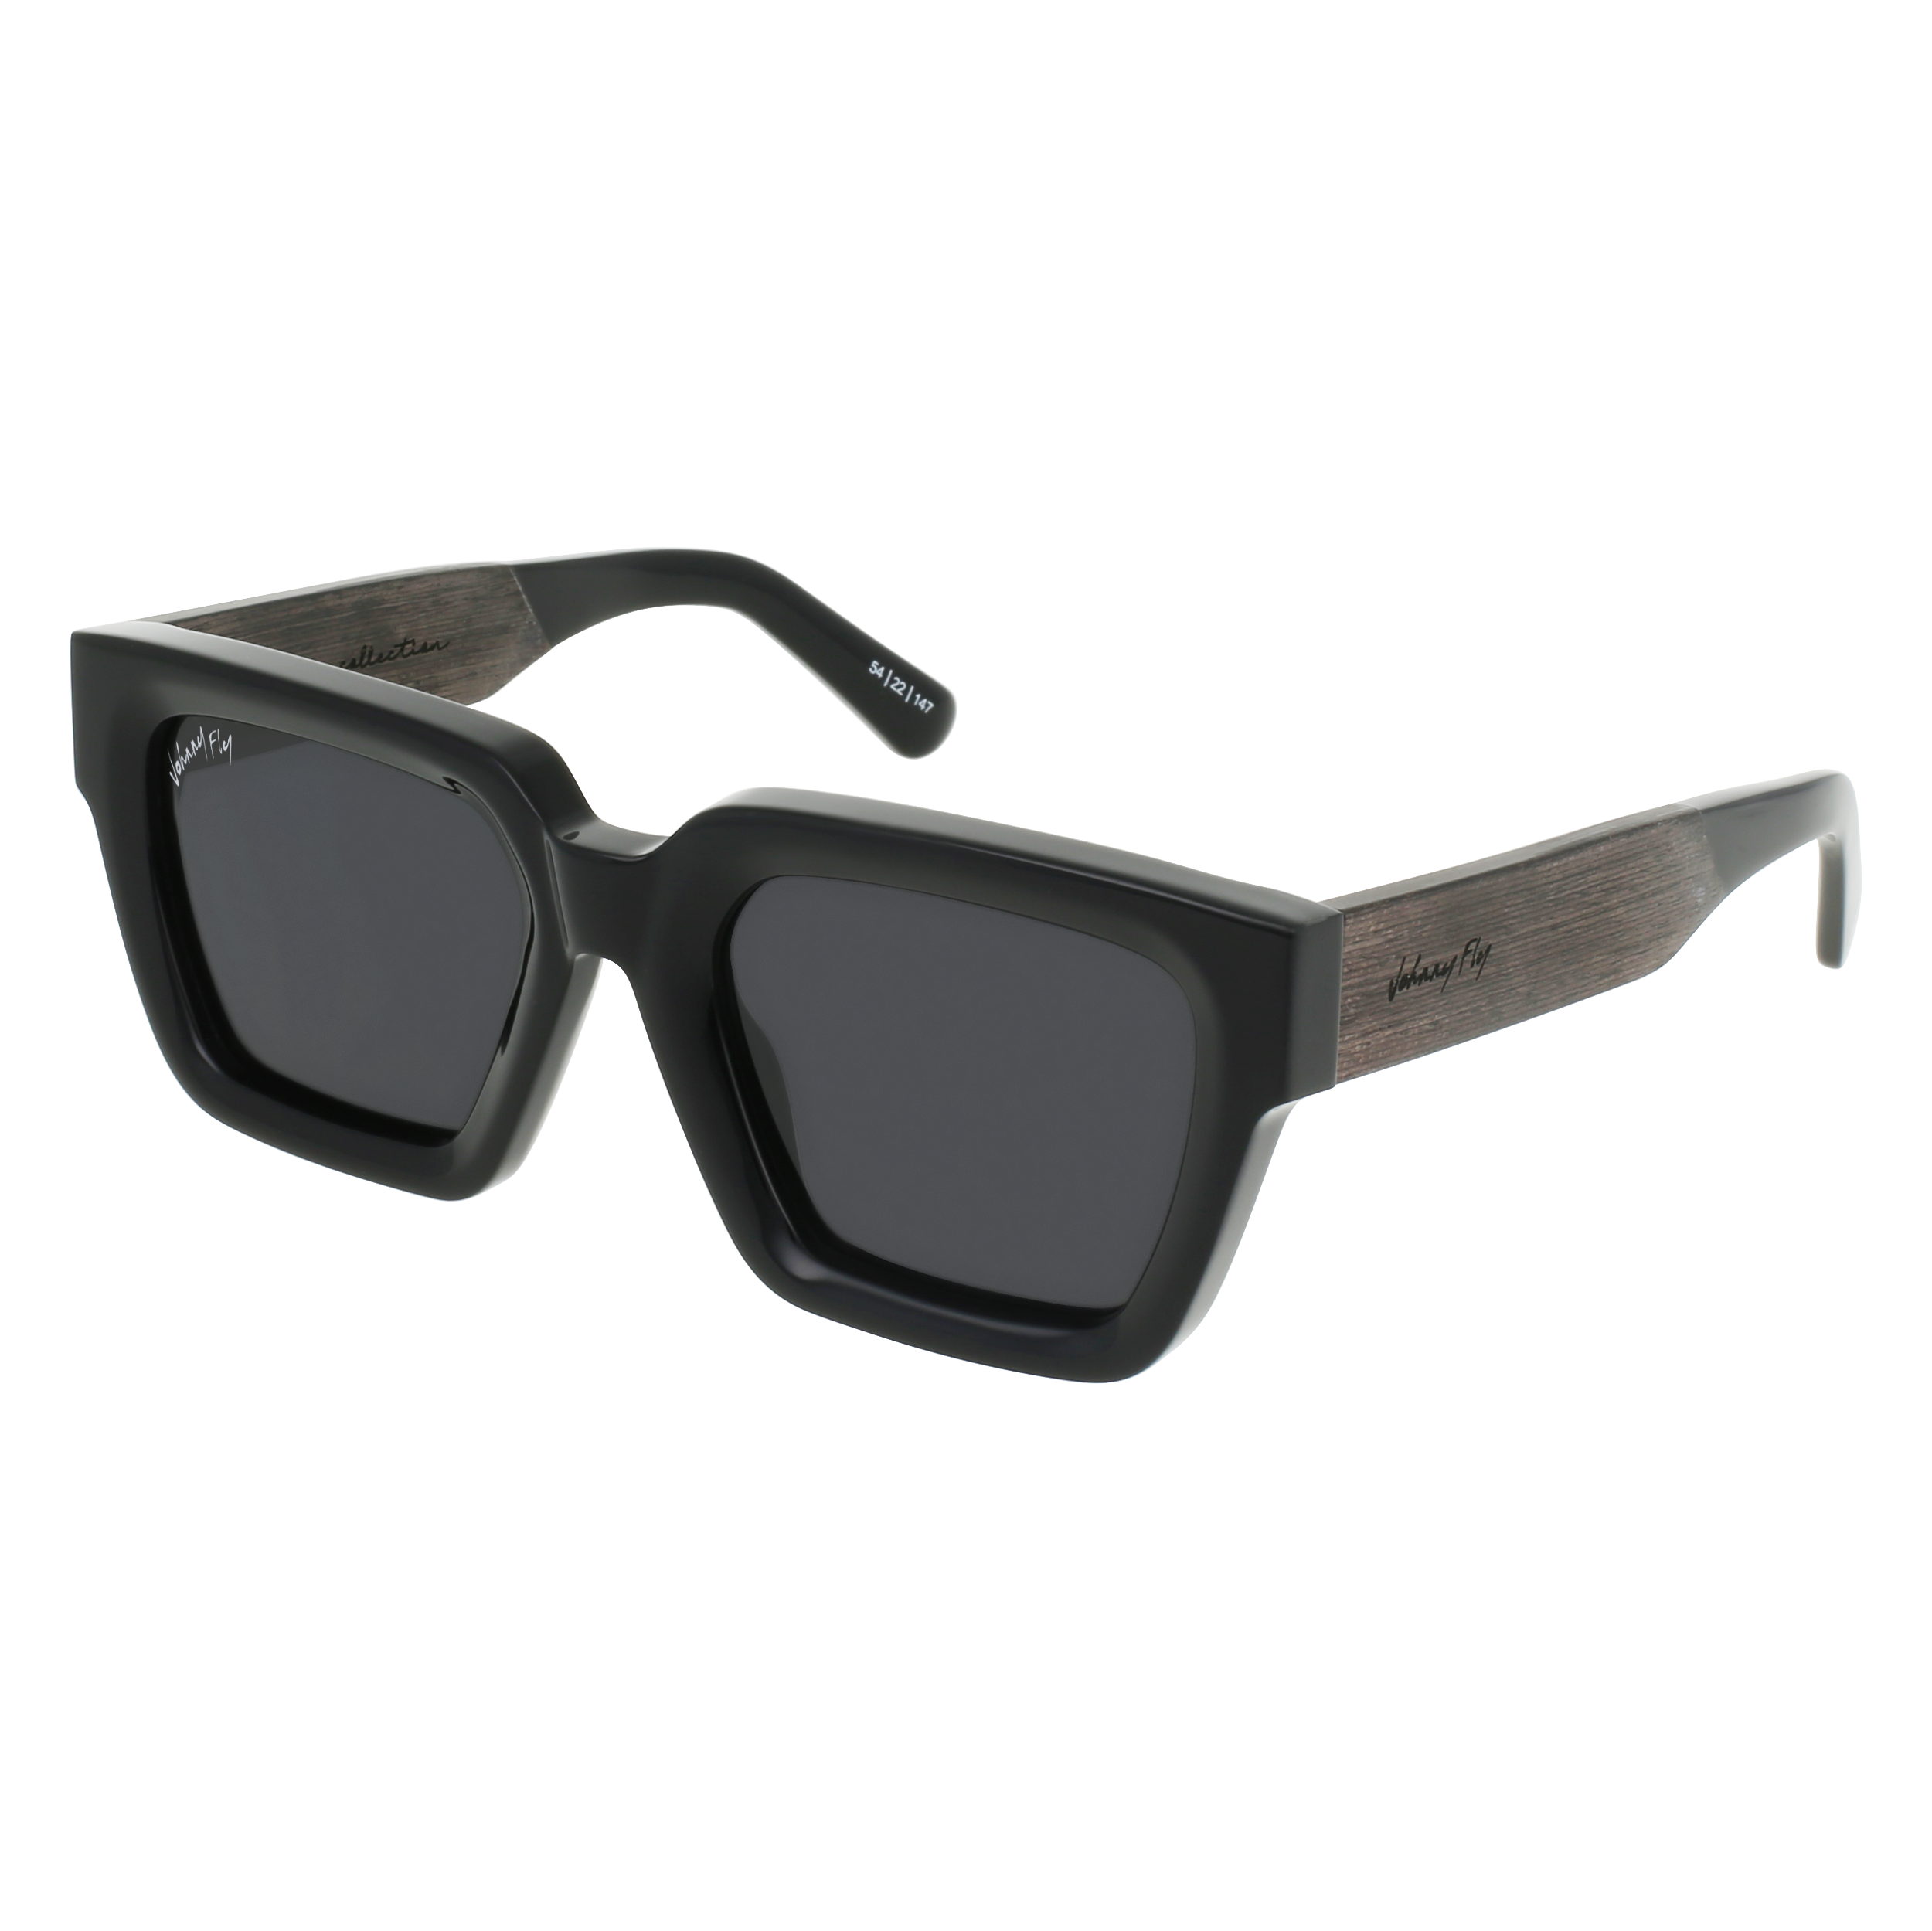 FAME Sunglasses Frame - Gloss Black- Johnny Fly | FAM-GBL-POL-SMK | | #color_gloss-black